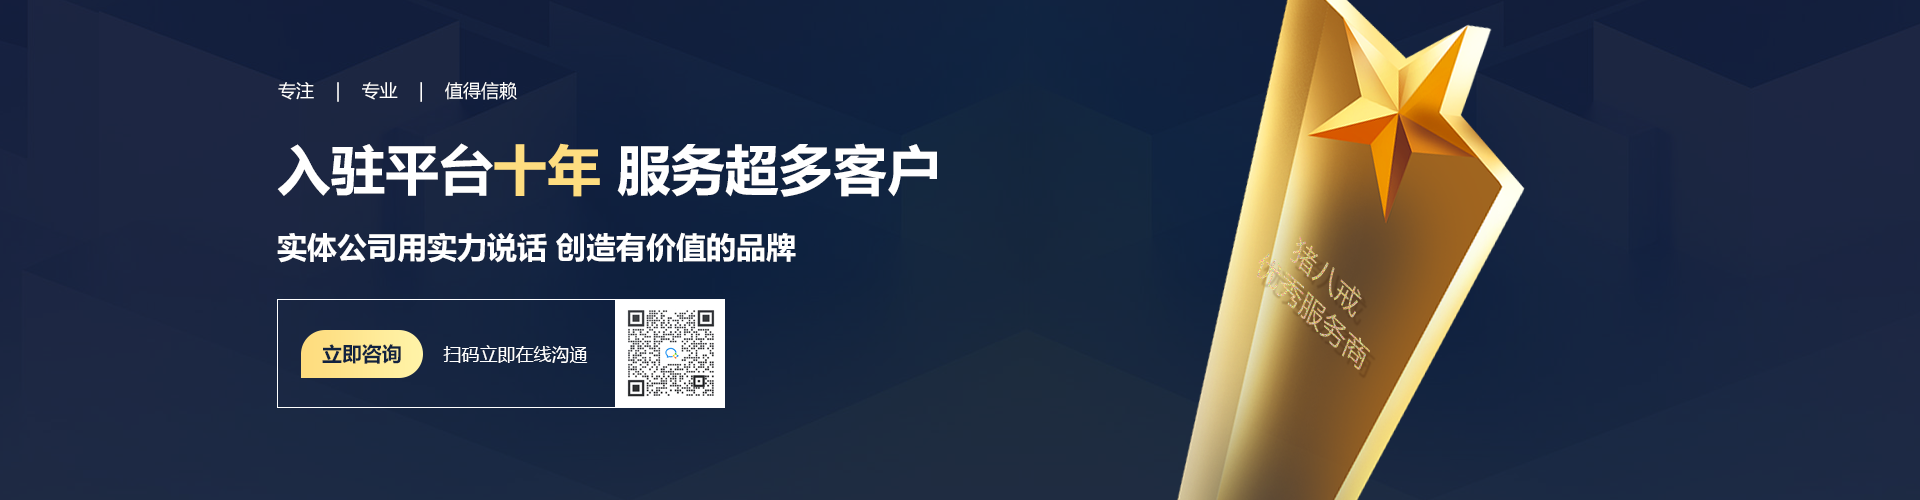 北京云企云商-18年软件开发